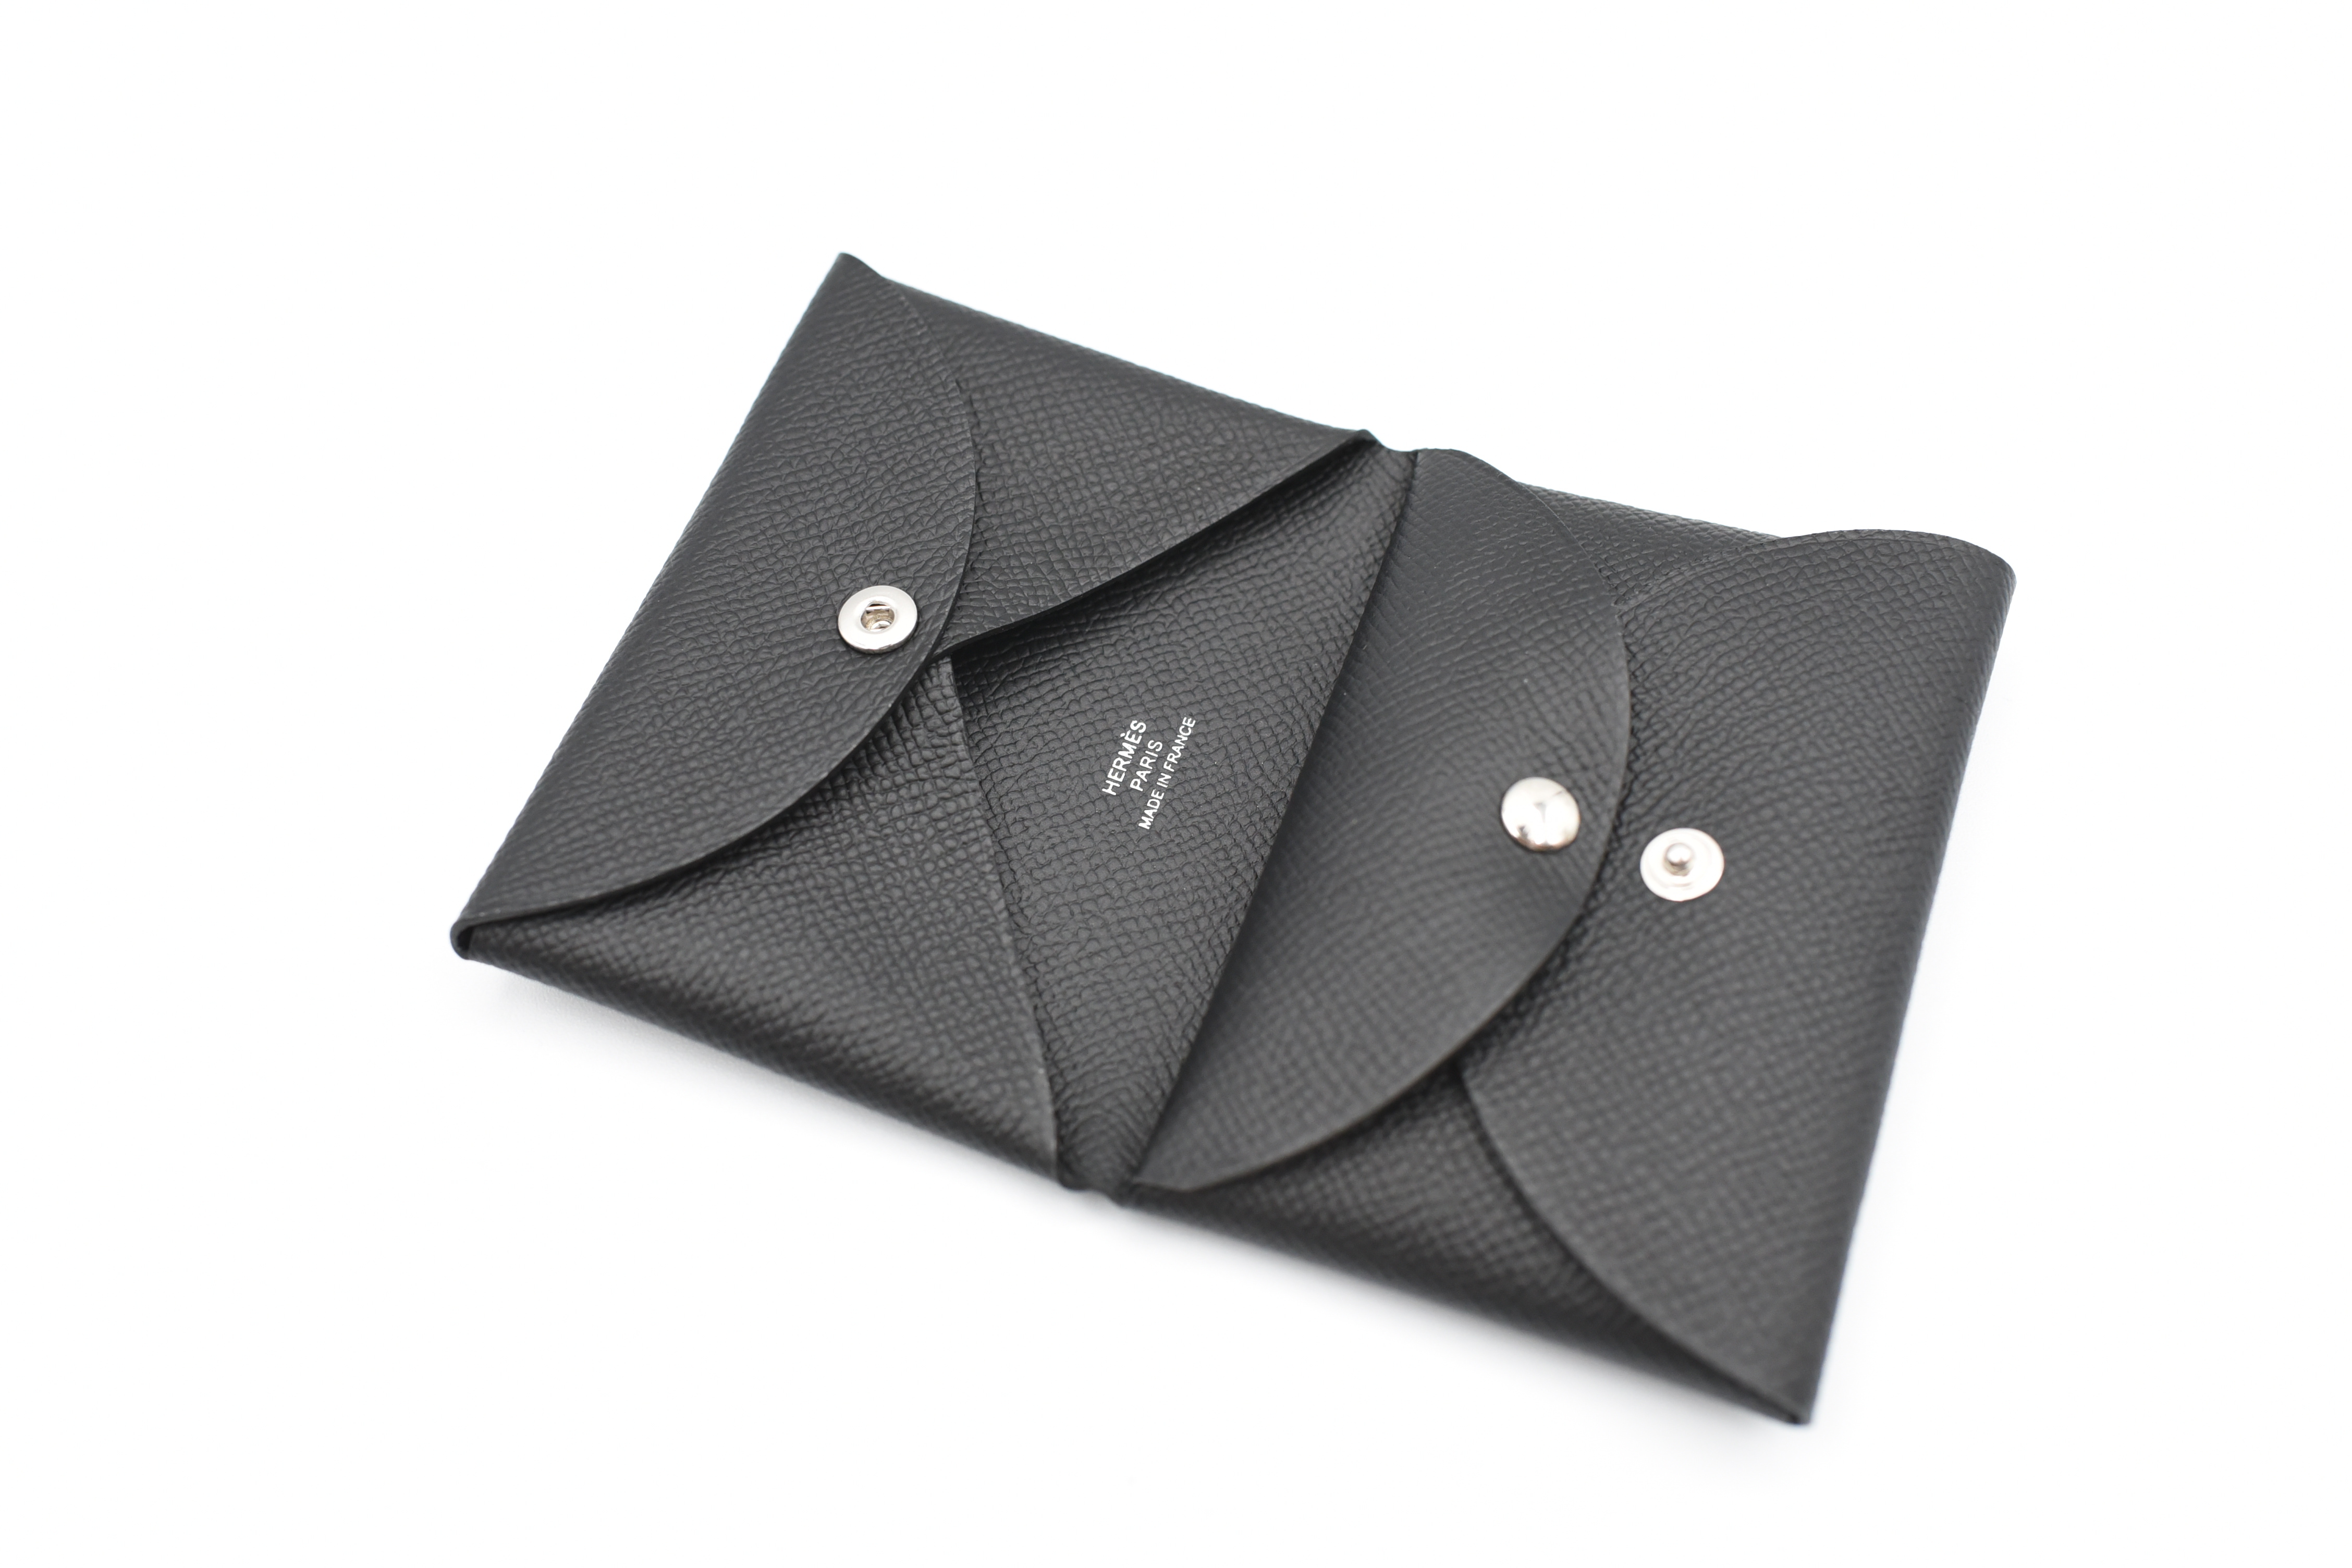 Hermes SLG Calvi Duo Cardholder, Wallet, Black, New in Box GA001